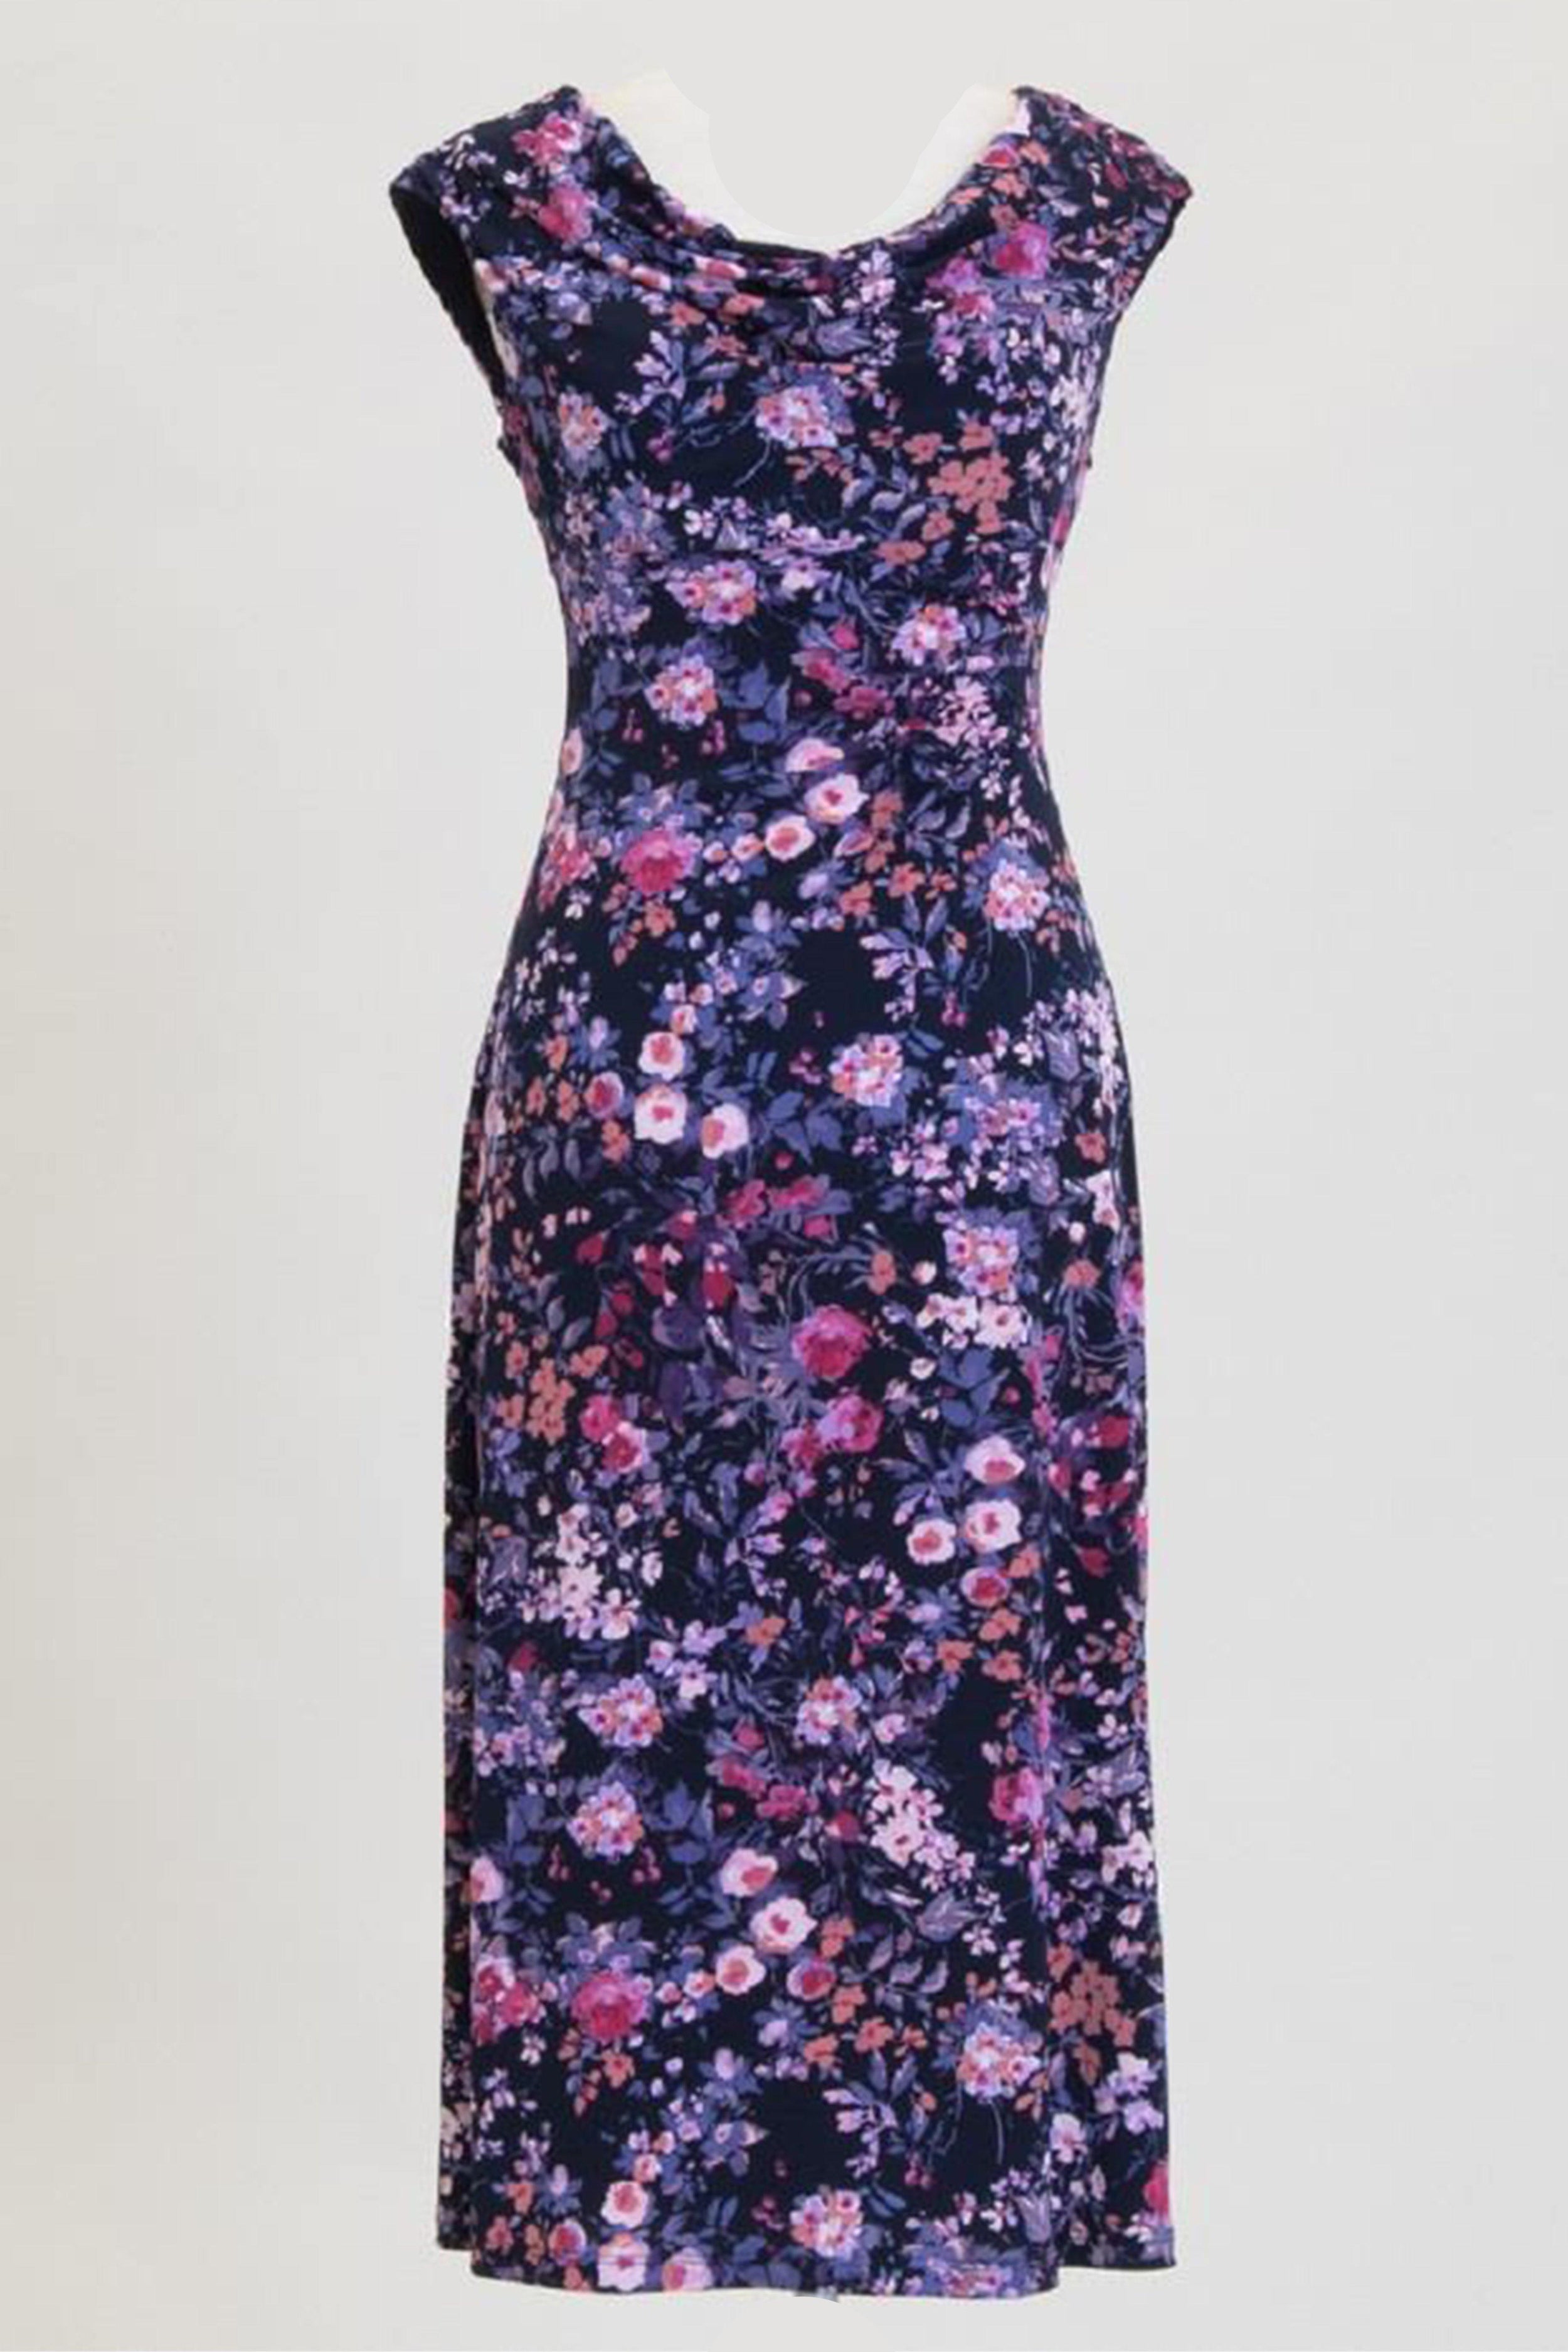 Connected Apparel Short Plus Size Floral Print Dress Sale - The Dress Outlet